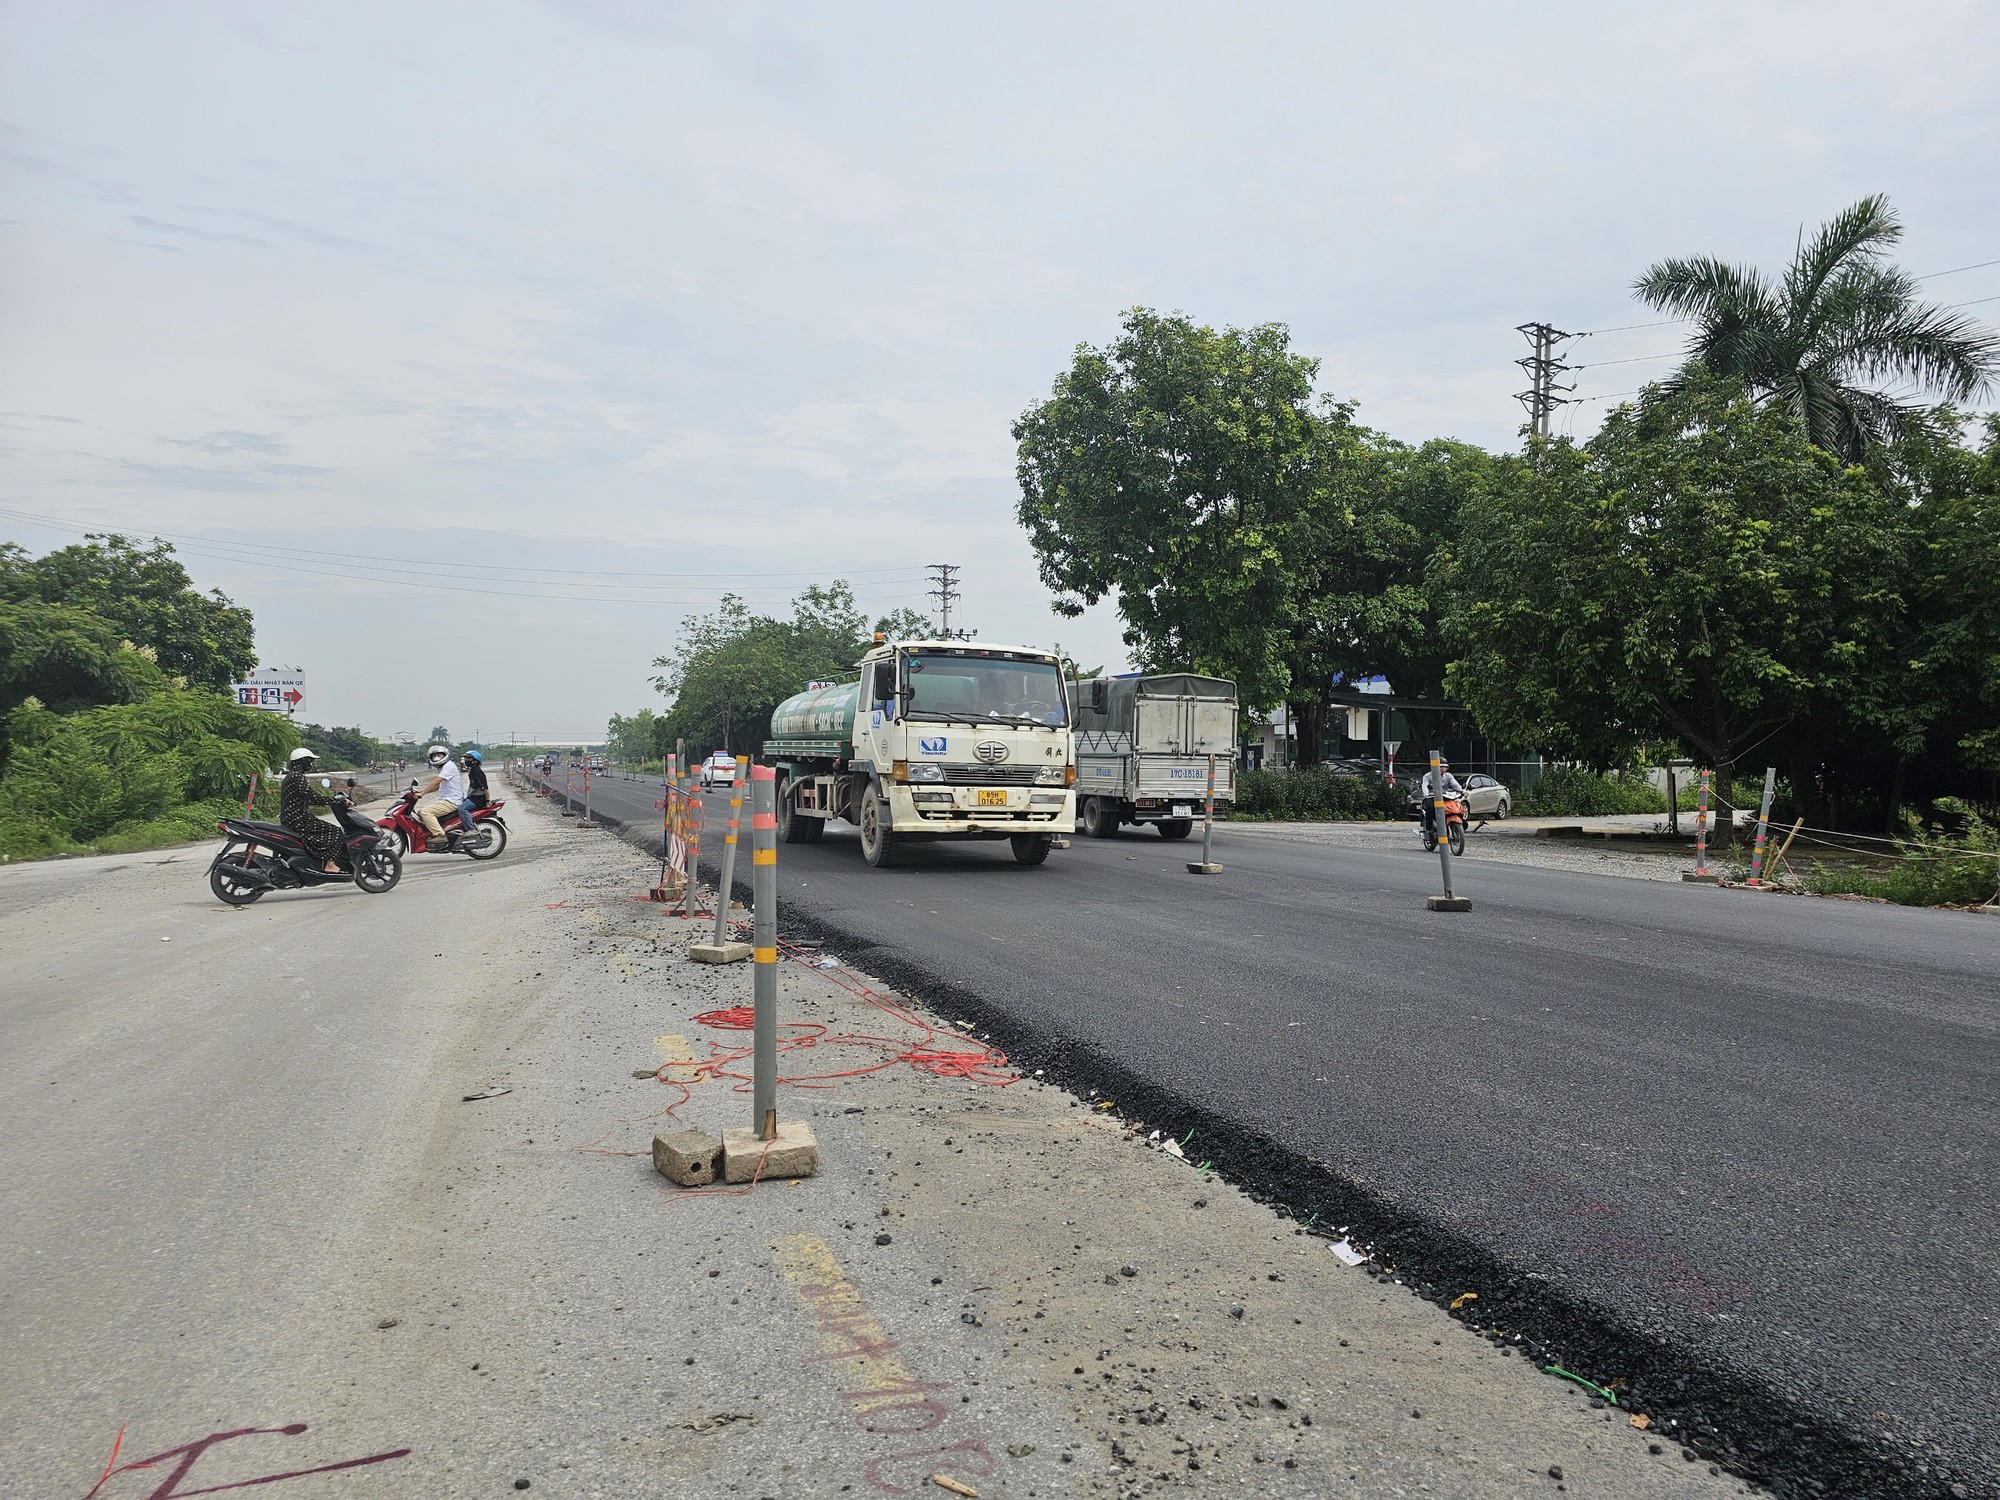 Dấu hiệu buông lỏng quản lý, giám sát tại dự án mở rộng đường liên tỉnh Hà Nội - Hưng Yên - Ảnh 8.